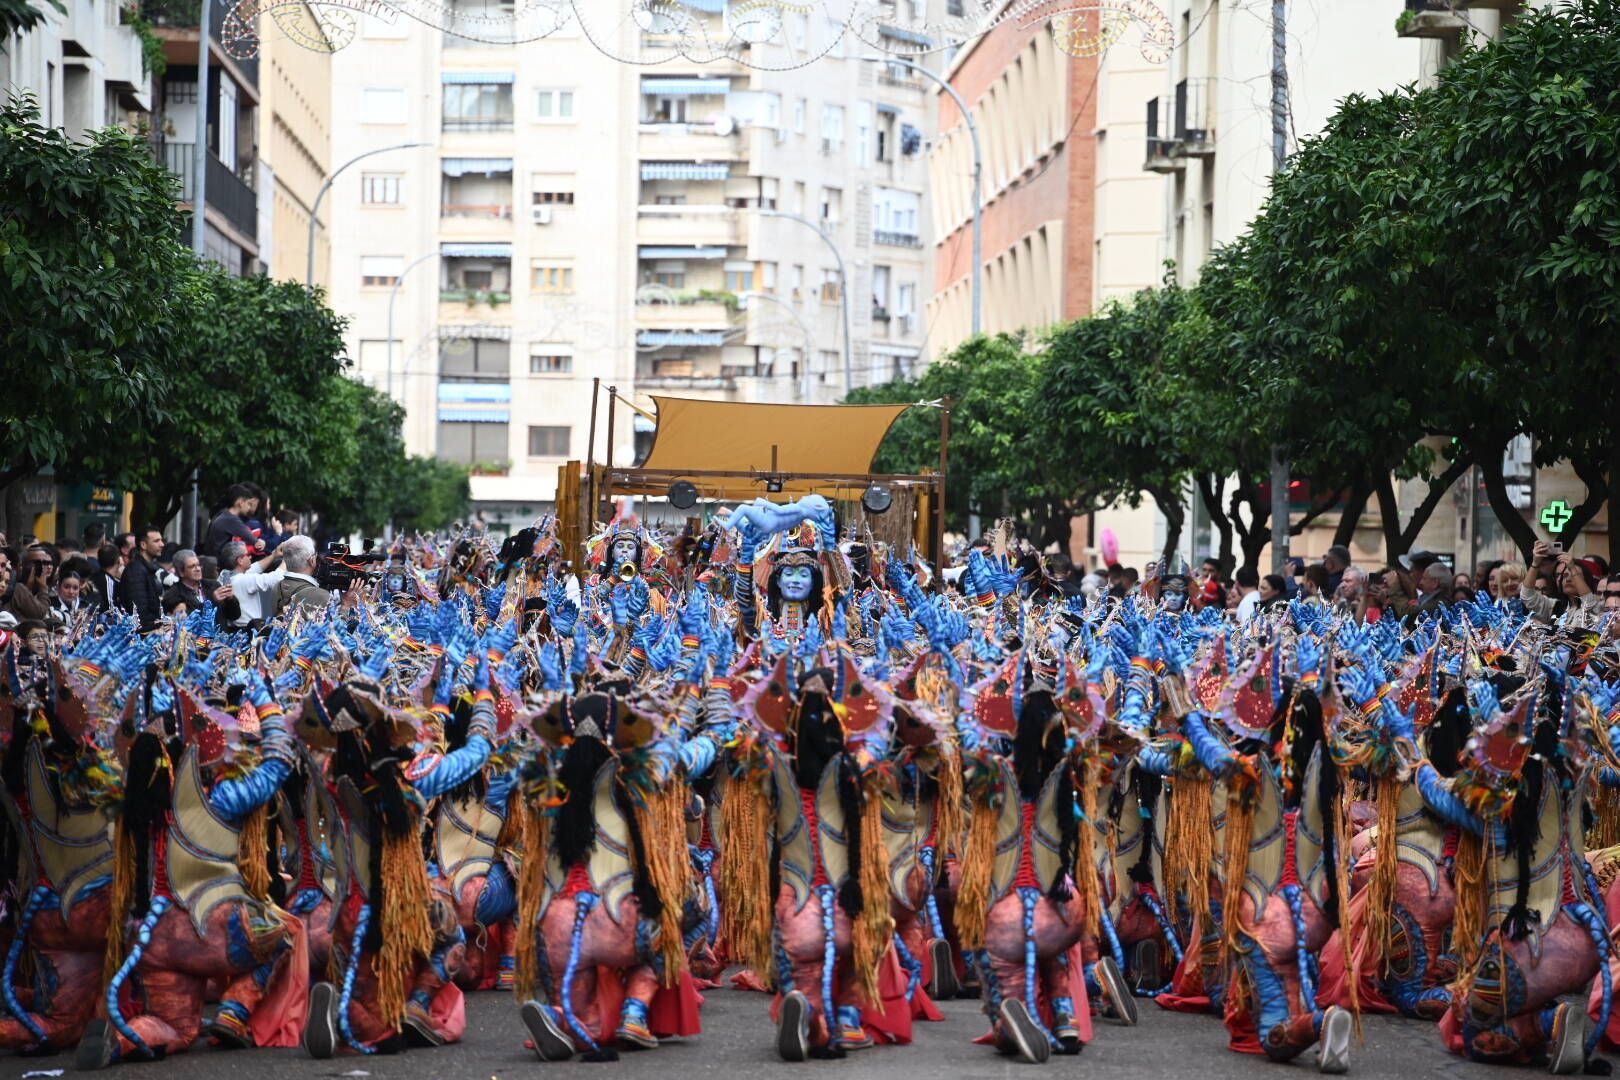 Galería | El Gran Desfile del Carnval de Badajoz, en imágenes